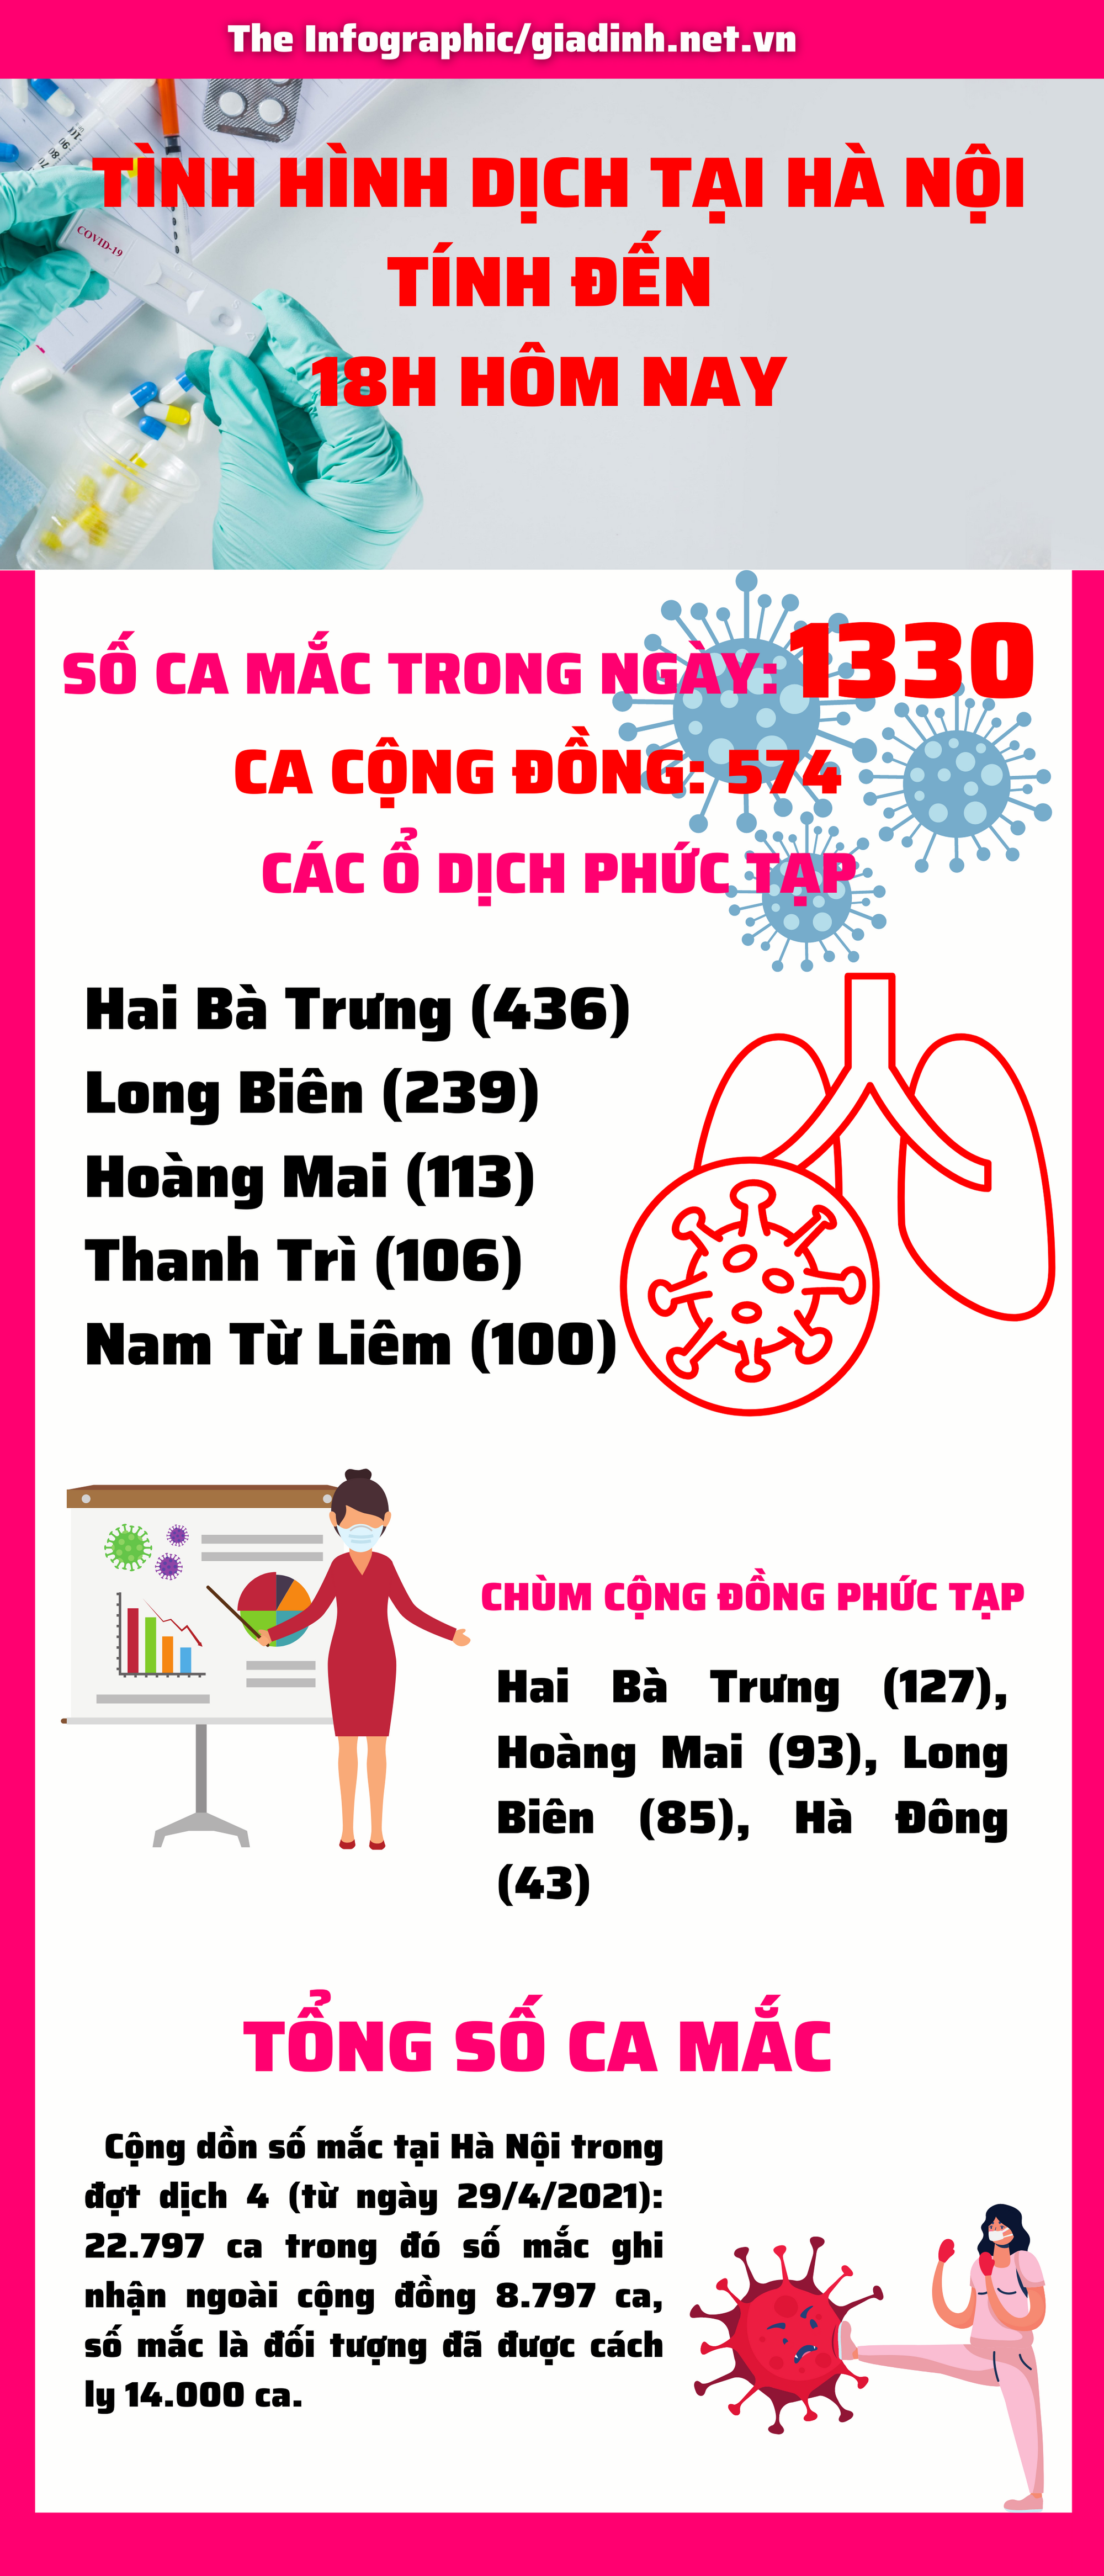 Hà Nội tiếp tục ghi nhận 1330 ca mắc COVID-19 mới, nhiều ổ dịch tiếp tục chạm ngưỡng hơn 400 ca - Ảnh 1.